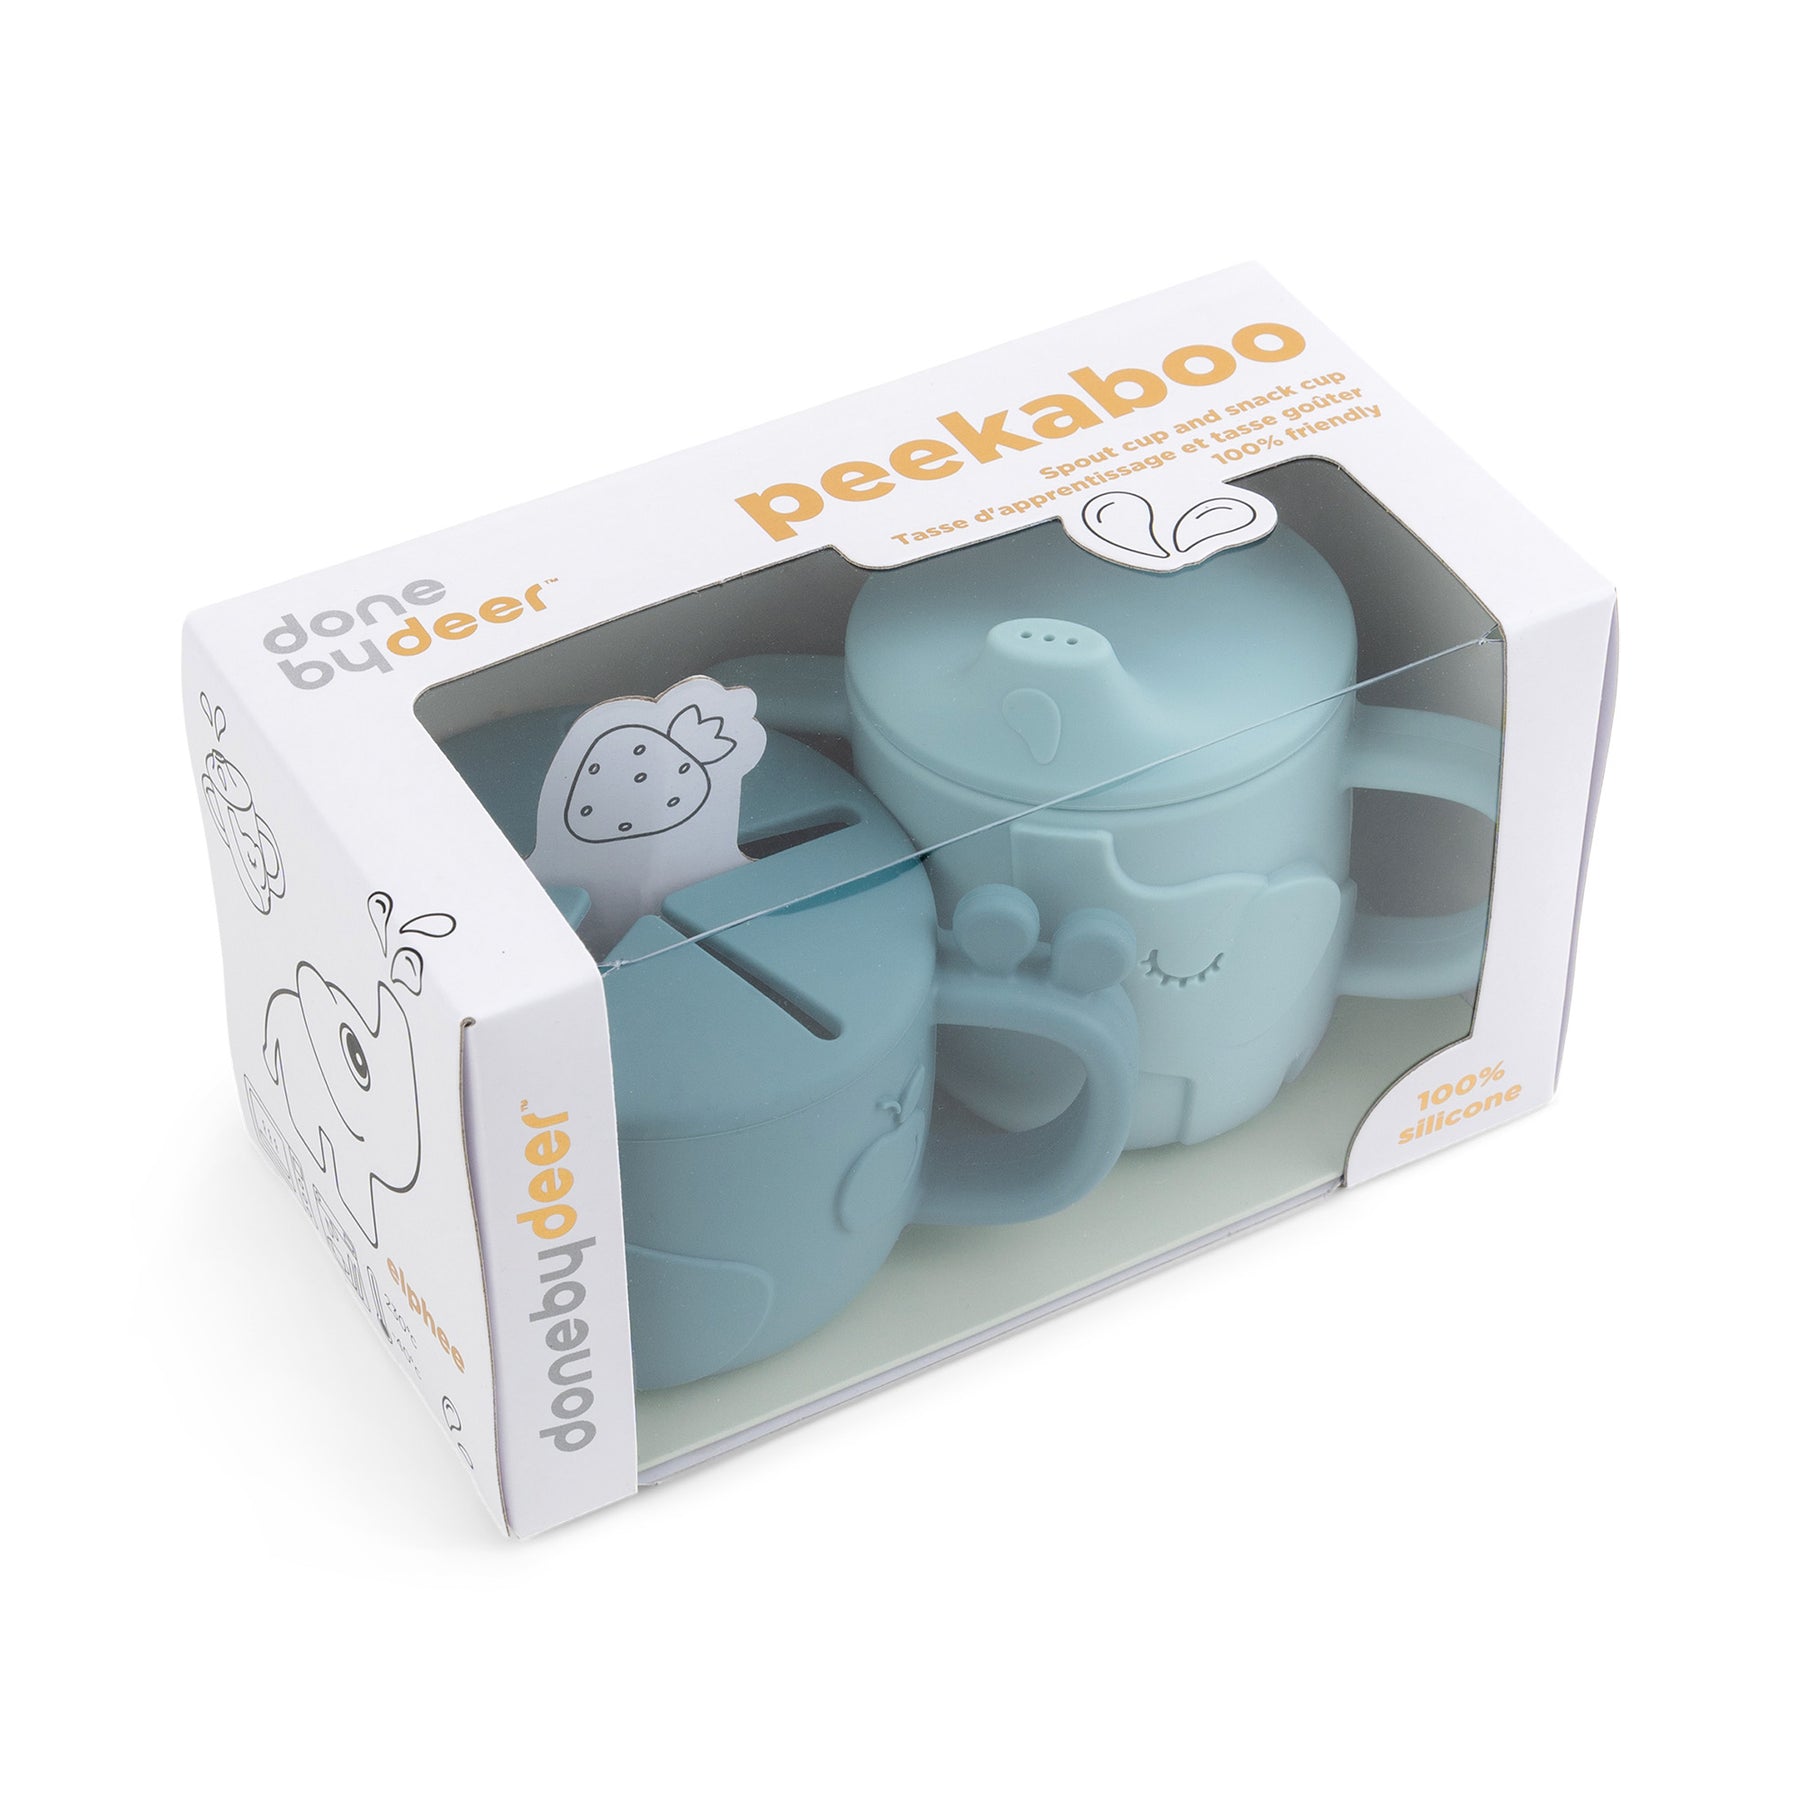 Peekaboo spout/snack cup set - Deer friends - Blue - Packaging